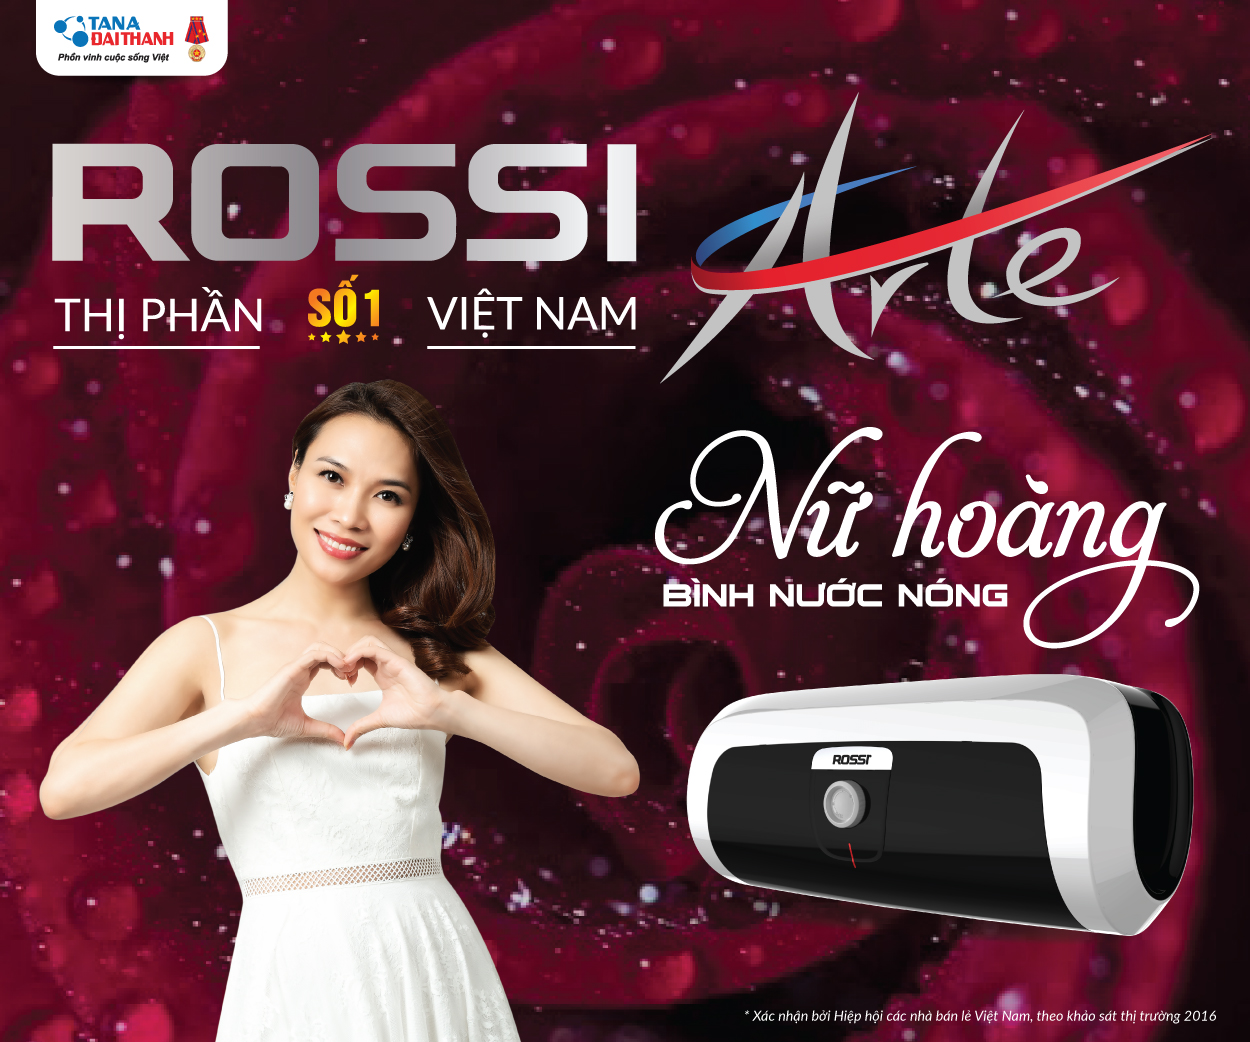 Bình nước nóng Rossi Arte – một thương hiệu cao cấp của Tập đoàn Tân Á Đại Thành.